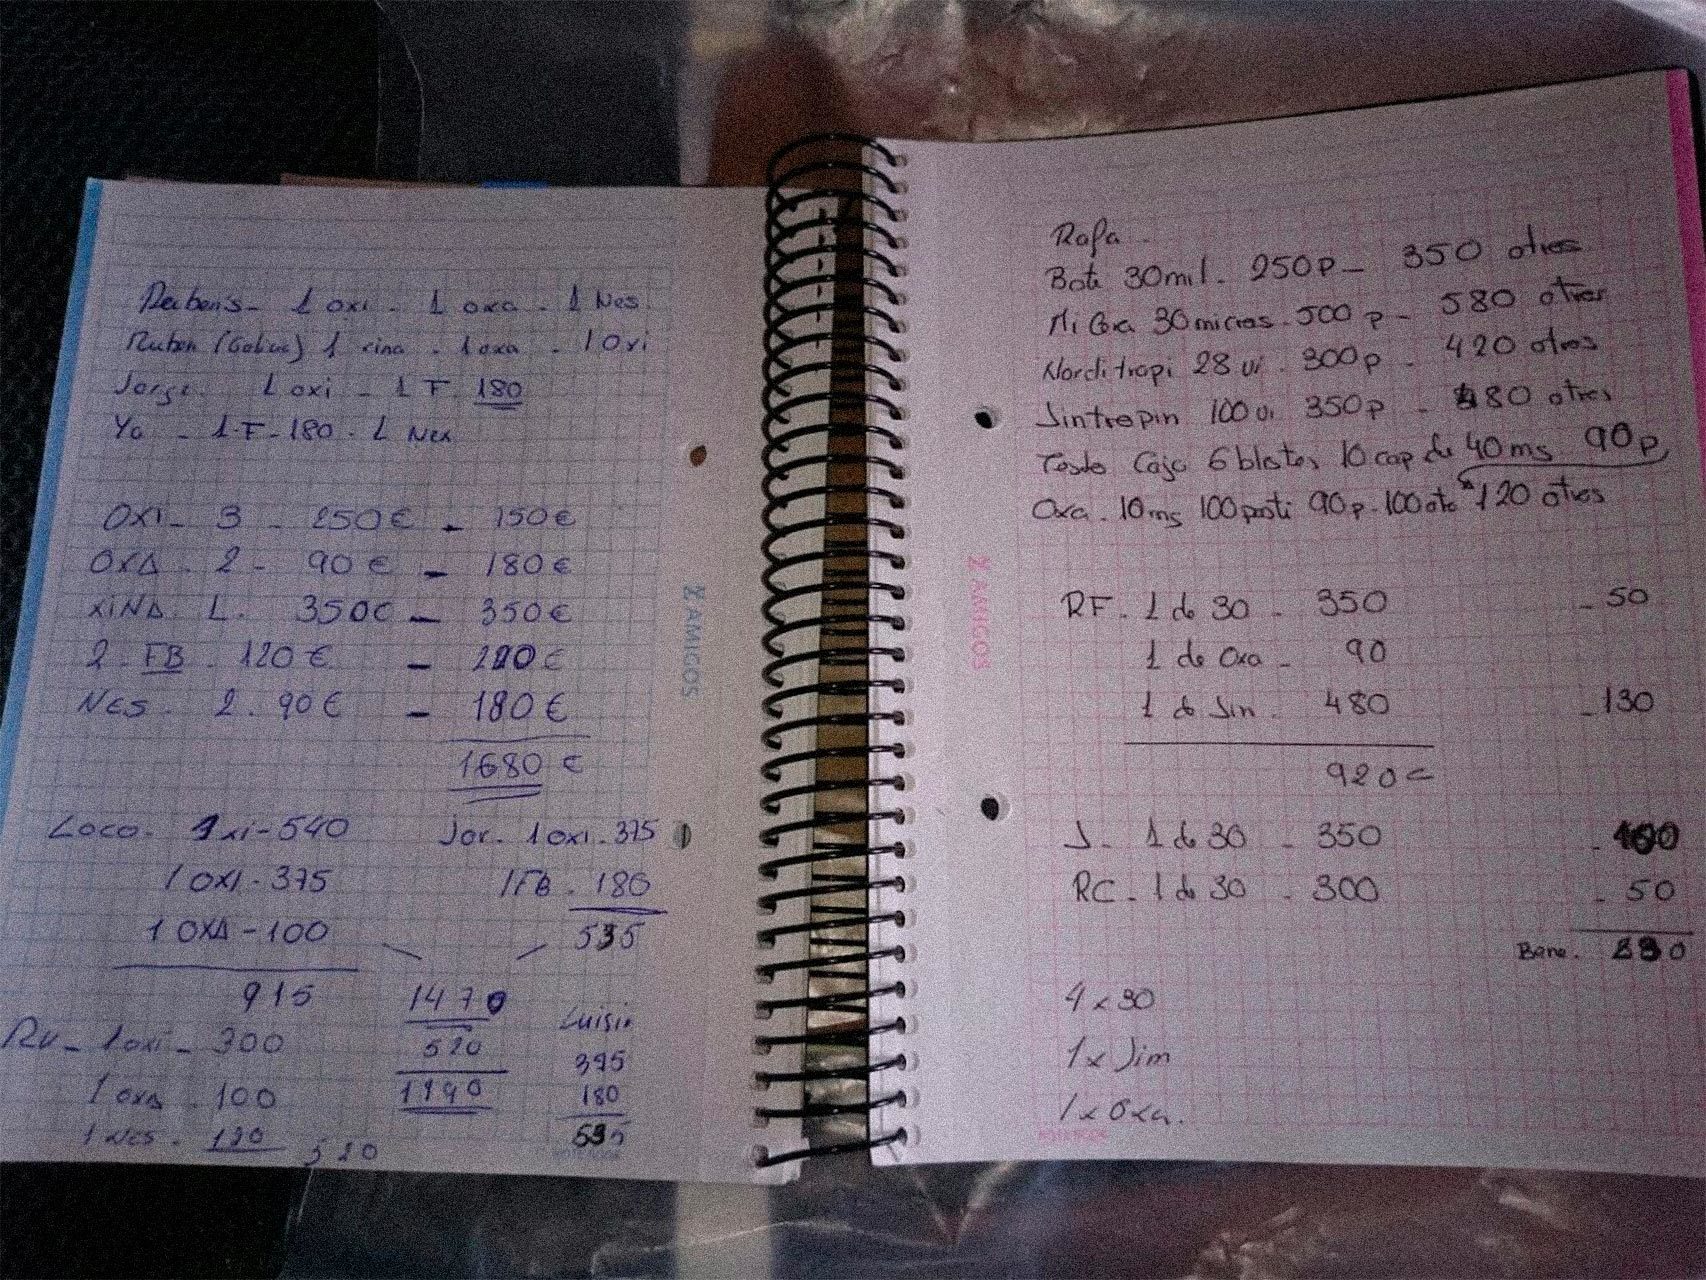 Cuaderno con anotaciones incautado a Alexis Rodríguez.